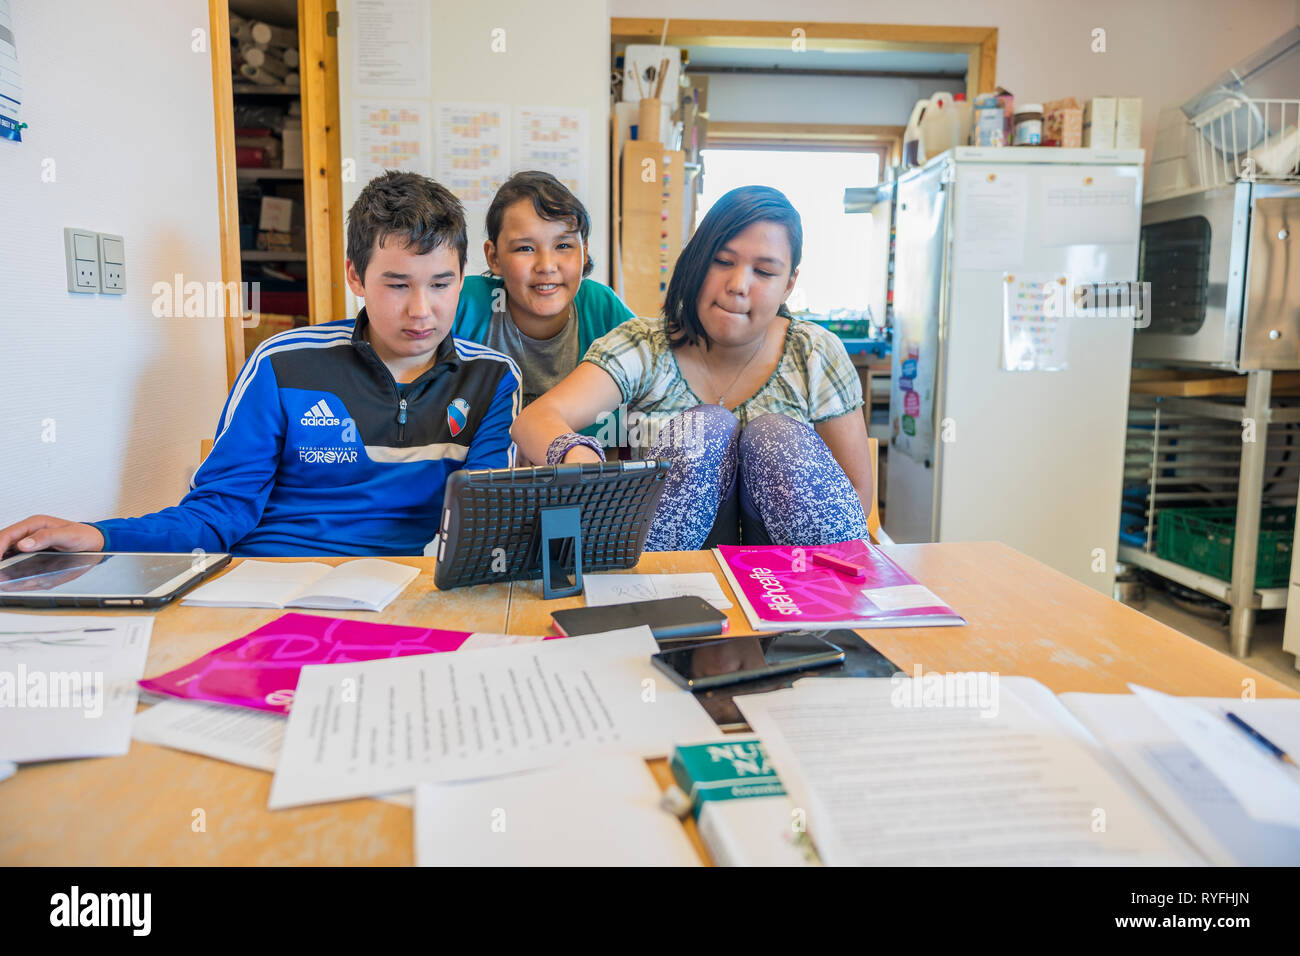 Les enfants de l'école, d'apprentissage ou Qassiarsuk Brattahlid, Sud du Groenland Banque D'Images